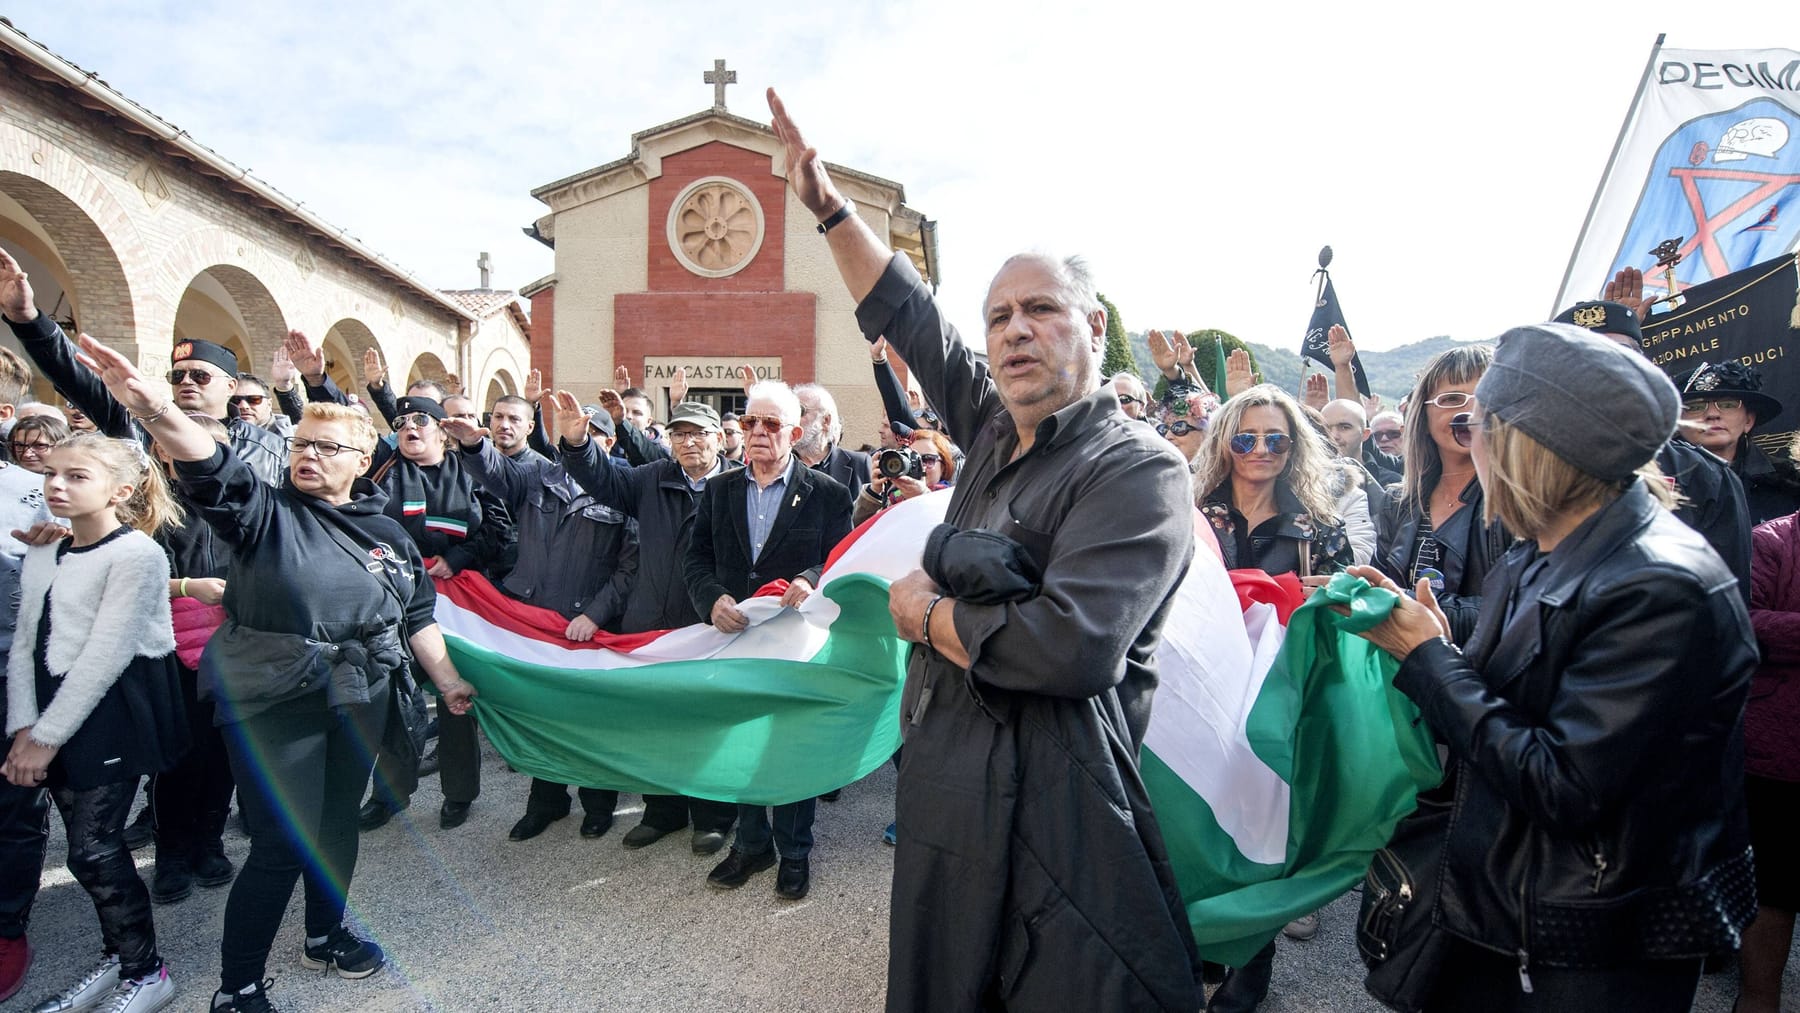 Il saluto fascista è autorizzato in Italia per decisione del tribunale